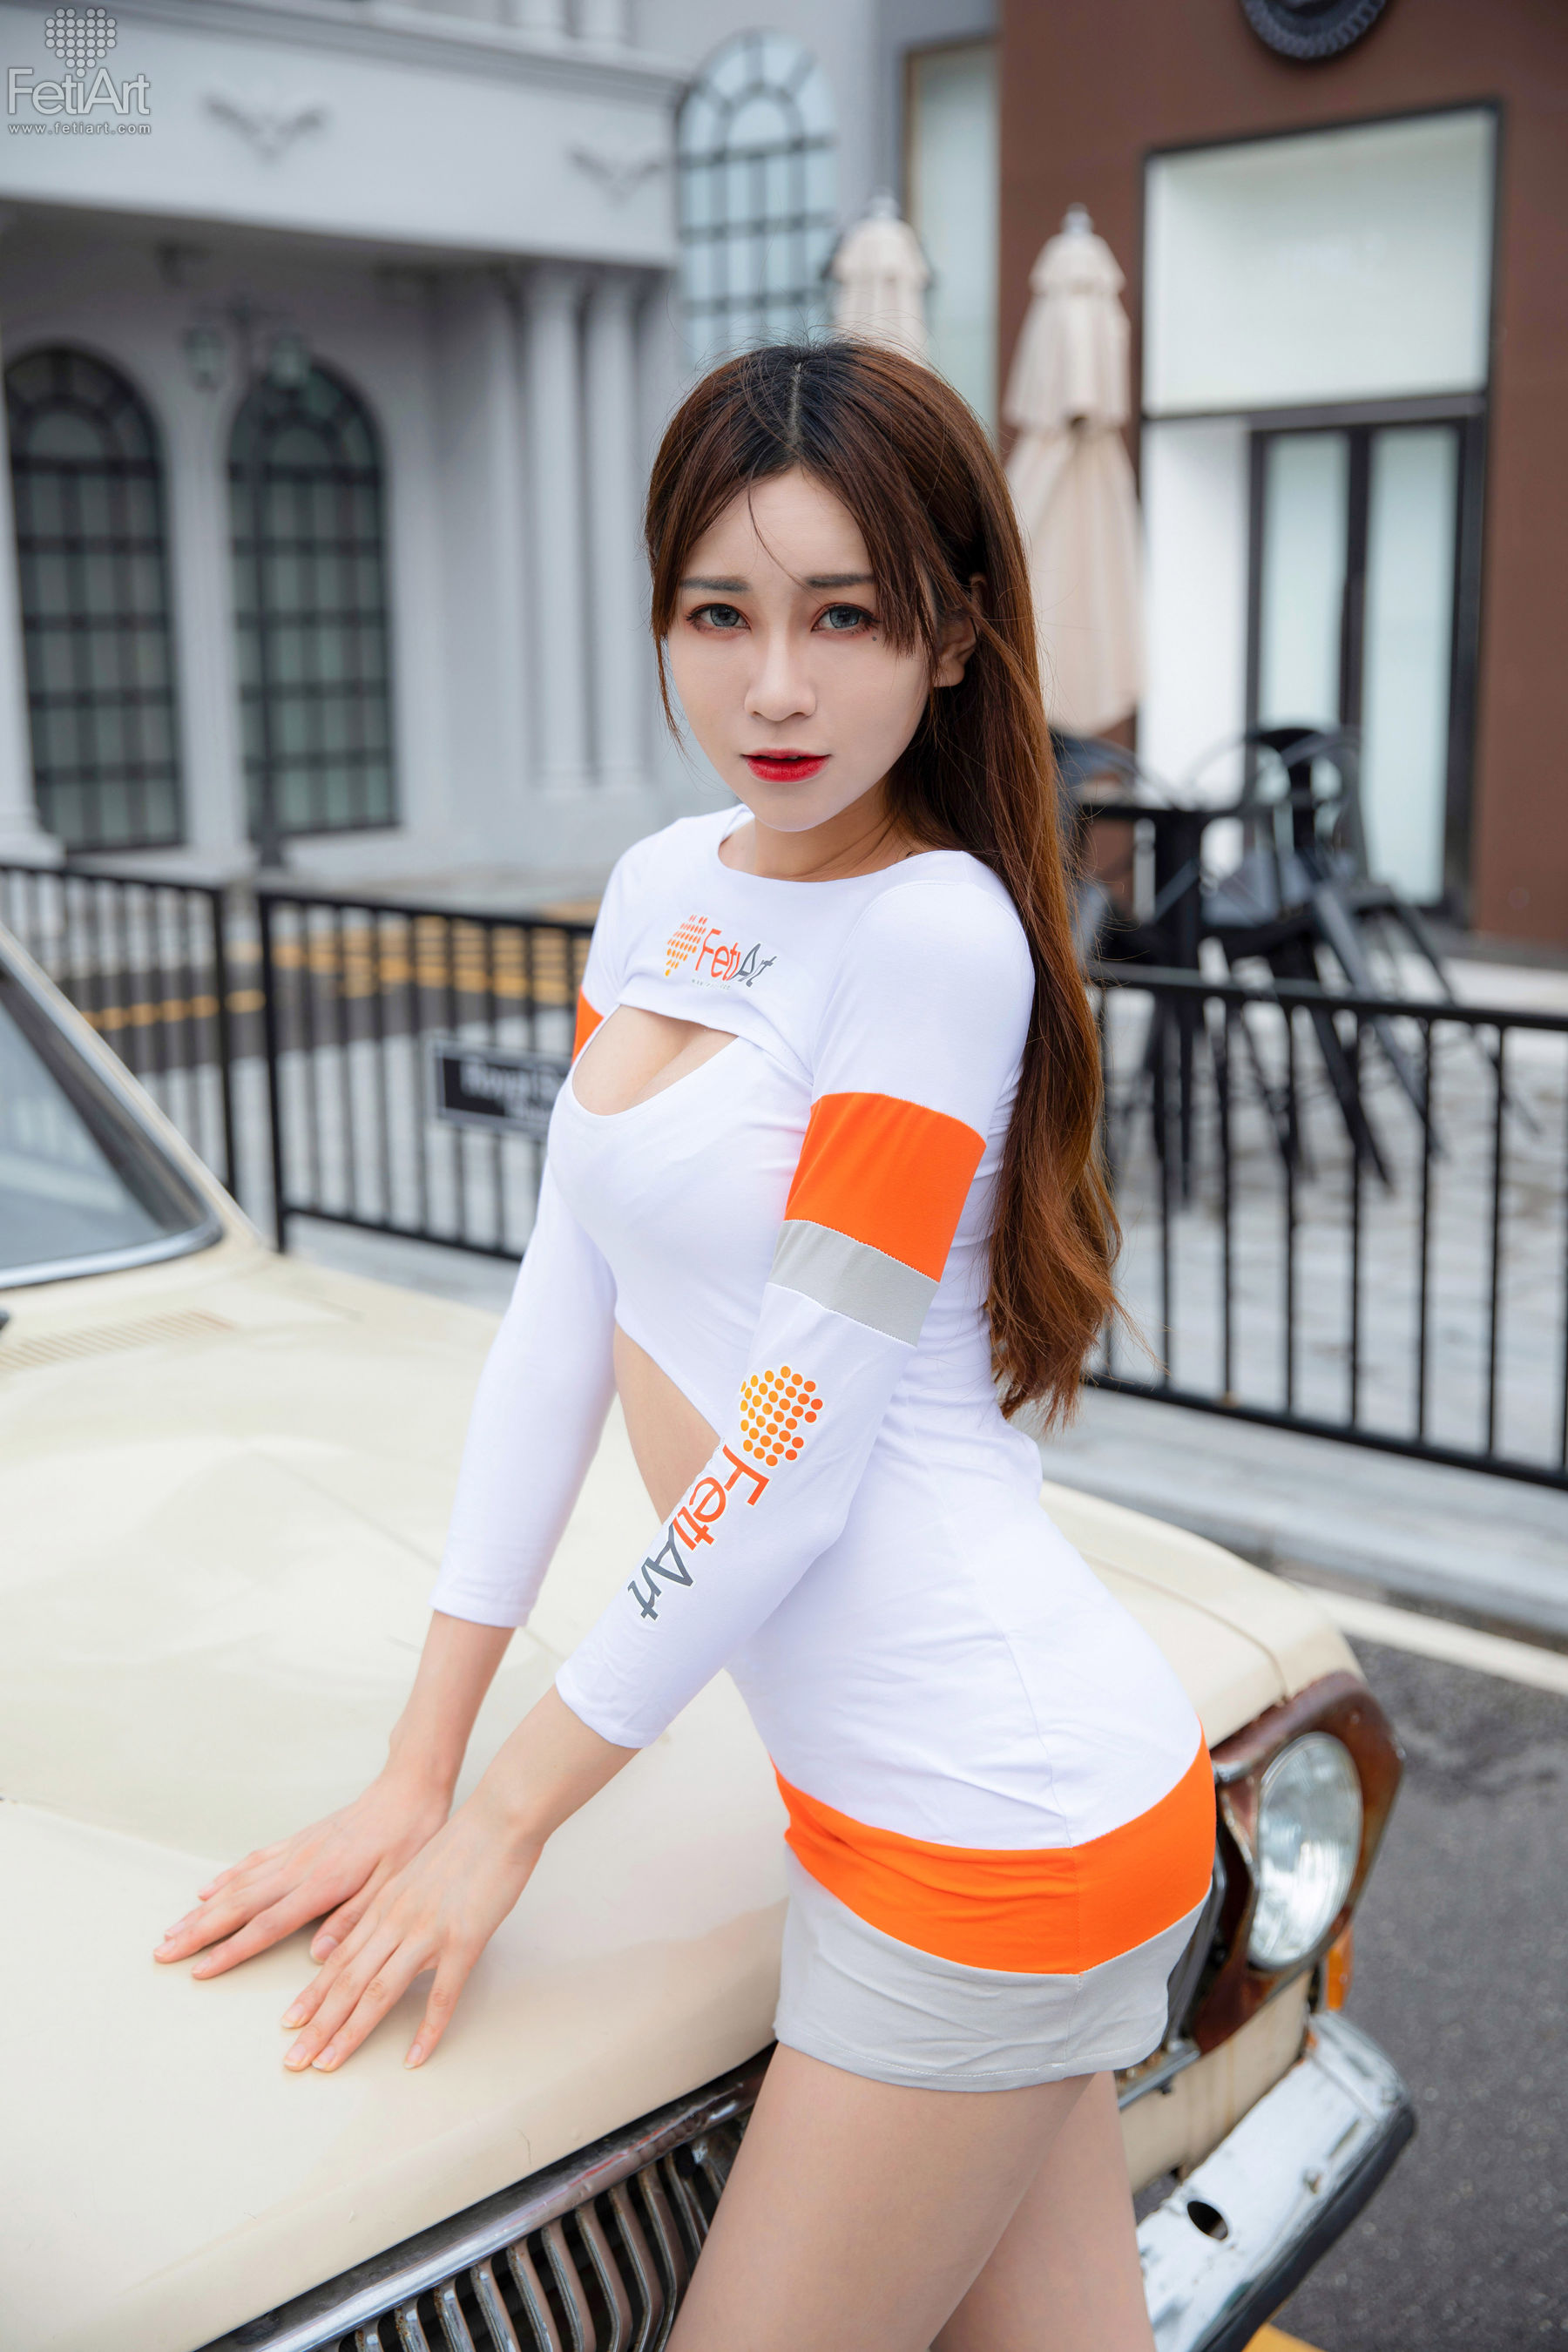 [尚物集FetiArt] No.043 Racing Beauty MODEL-Tracy